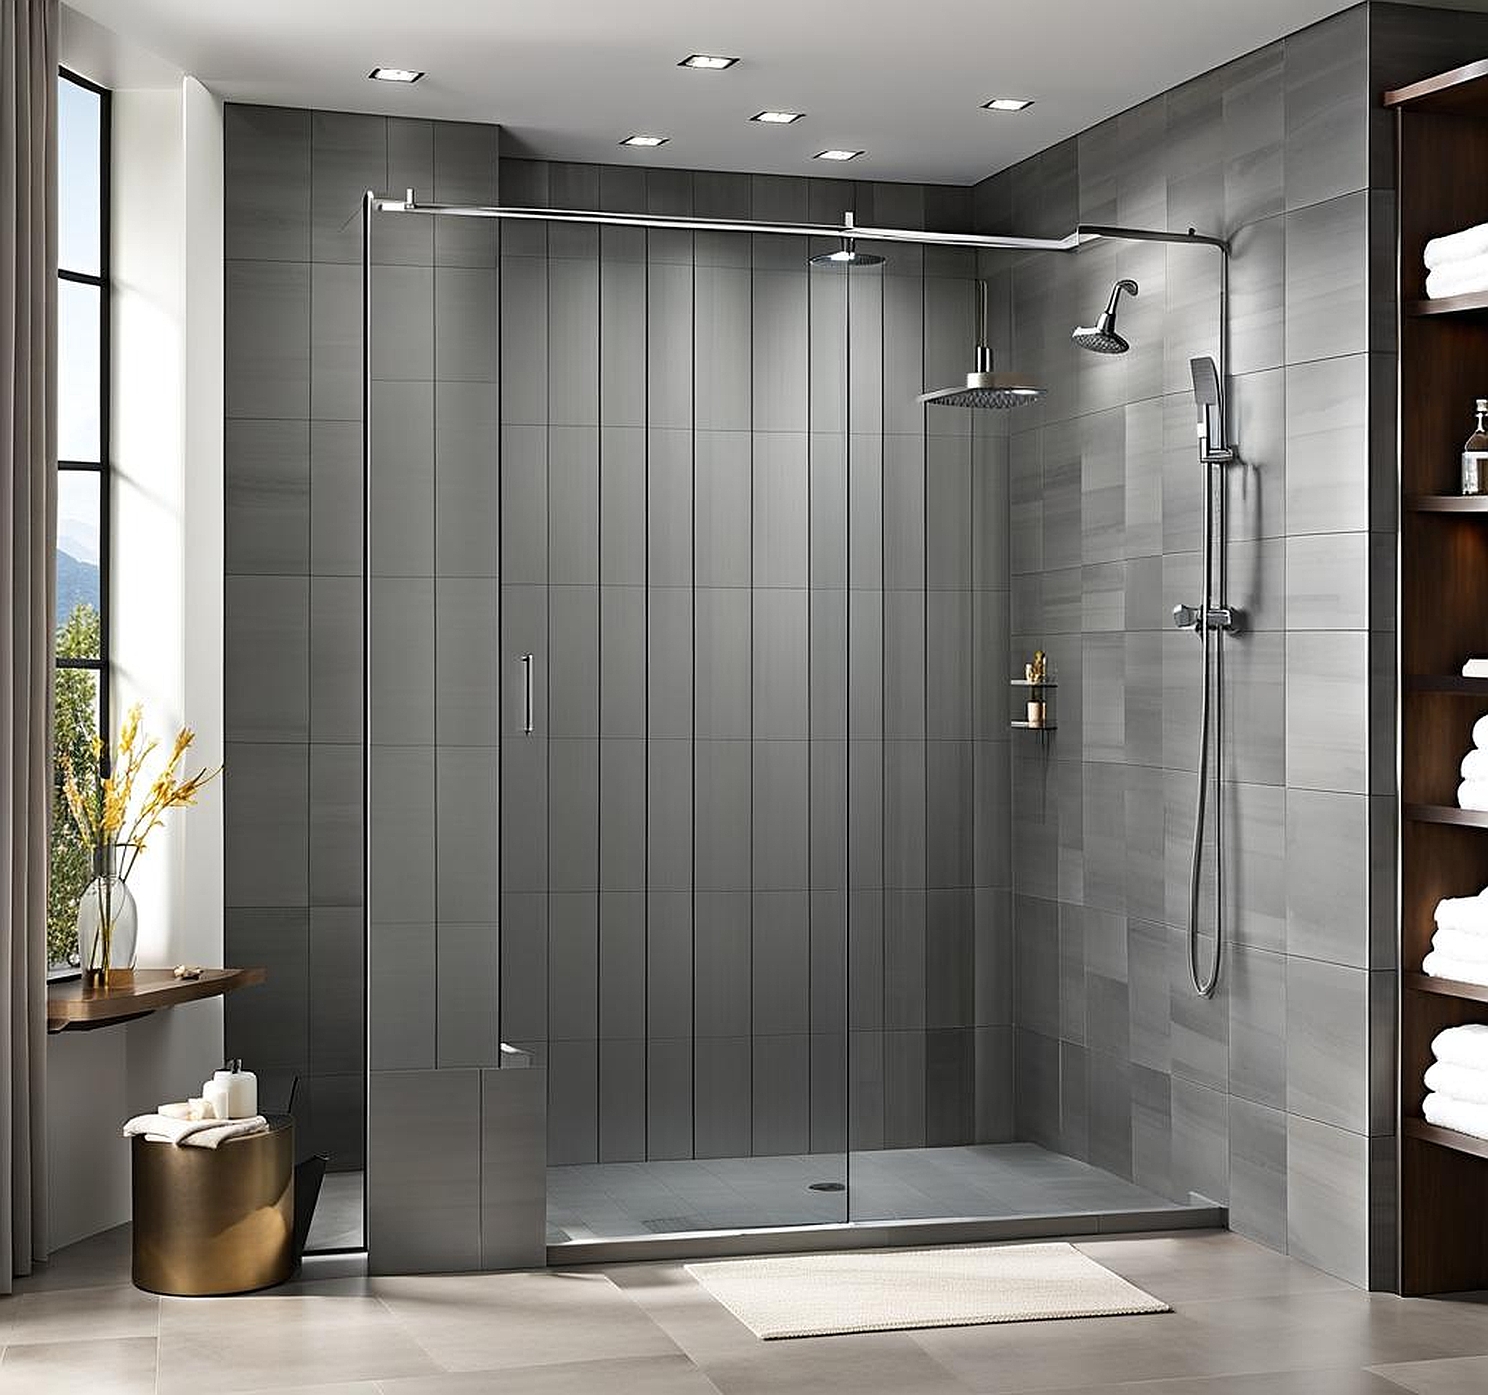 gray shower tile ideas